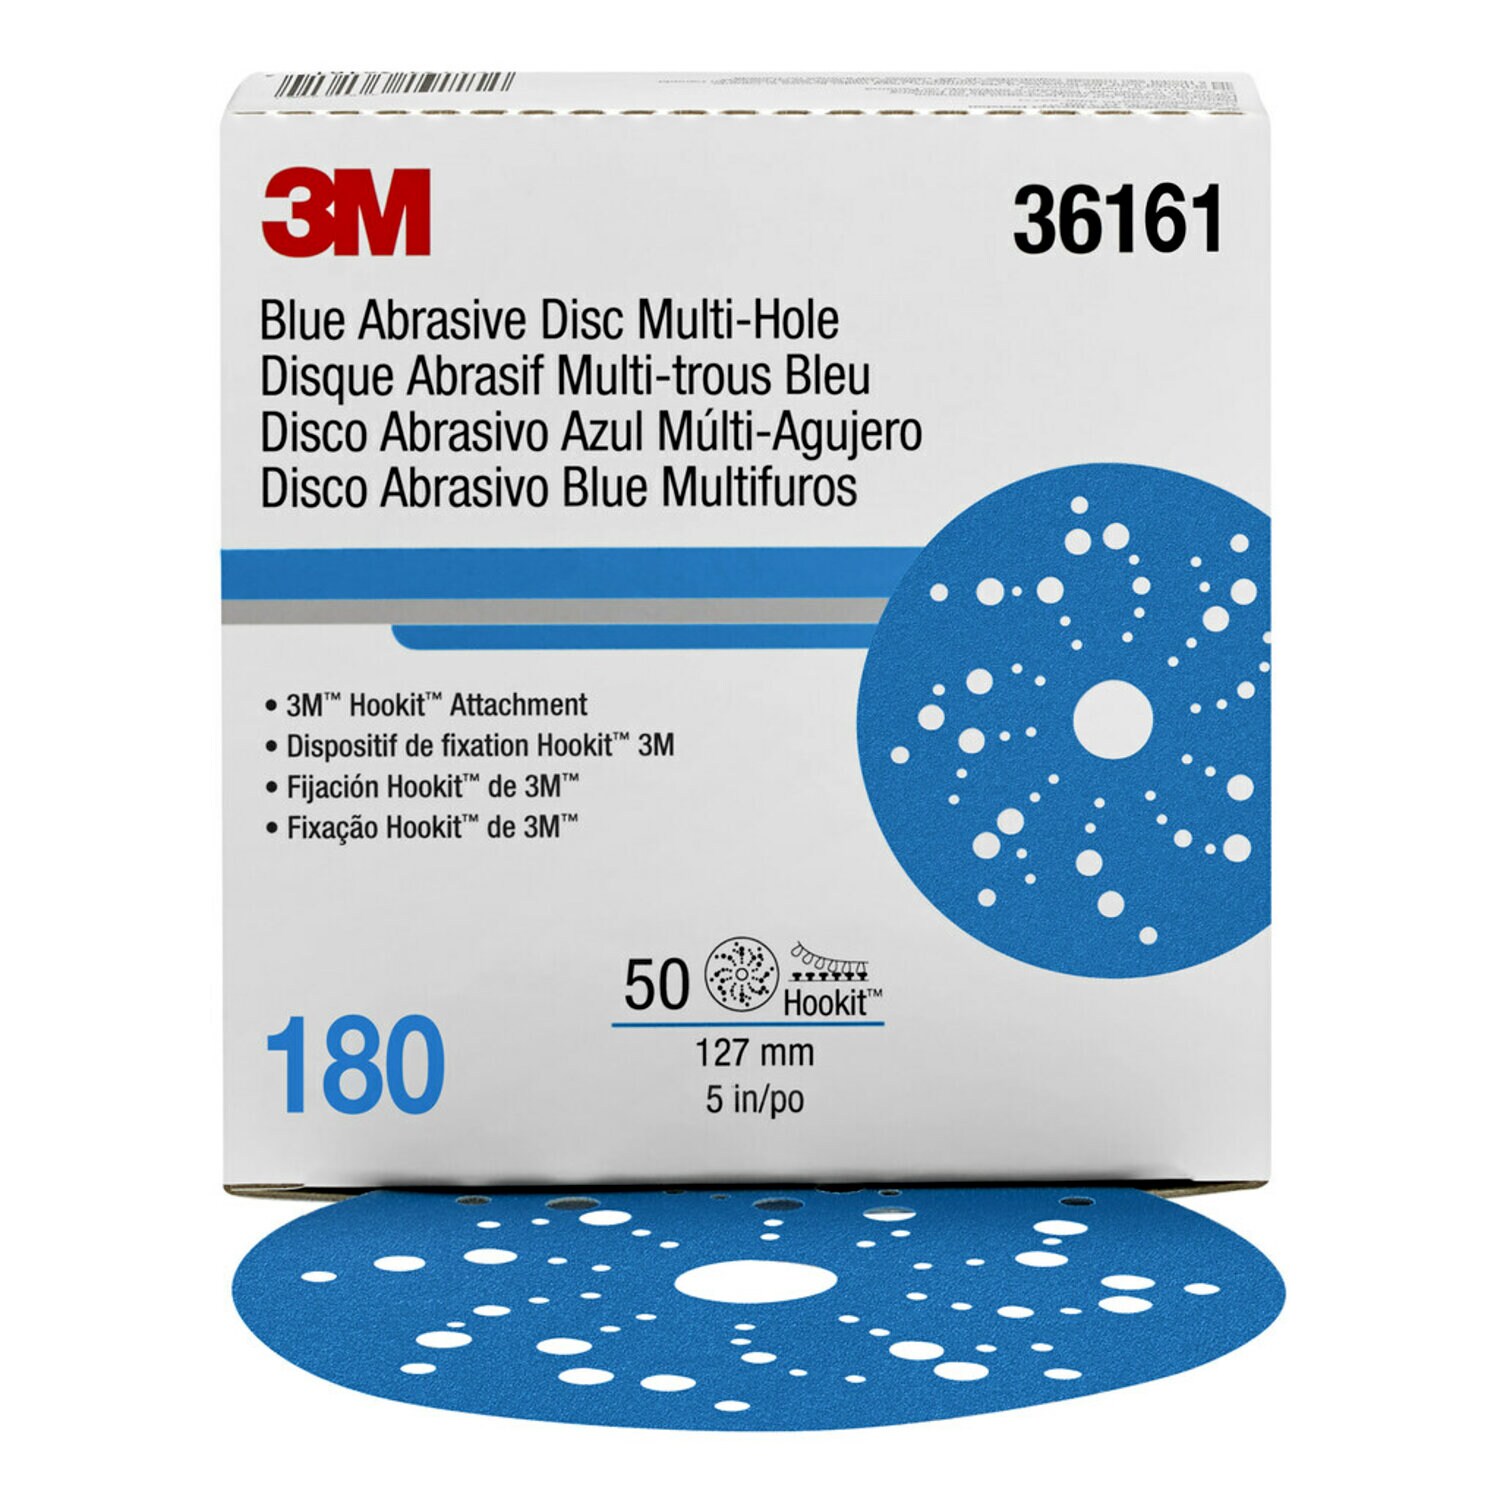 7100090978 - 3M Hookit Blue Abrasive Disc 321U Multi-hole, 36161, 5 in, 180, 50
discs per carton, 4 cartons per case